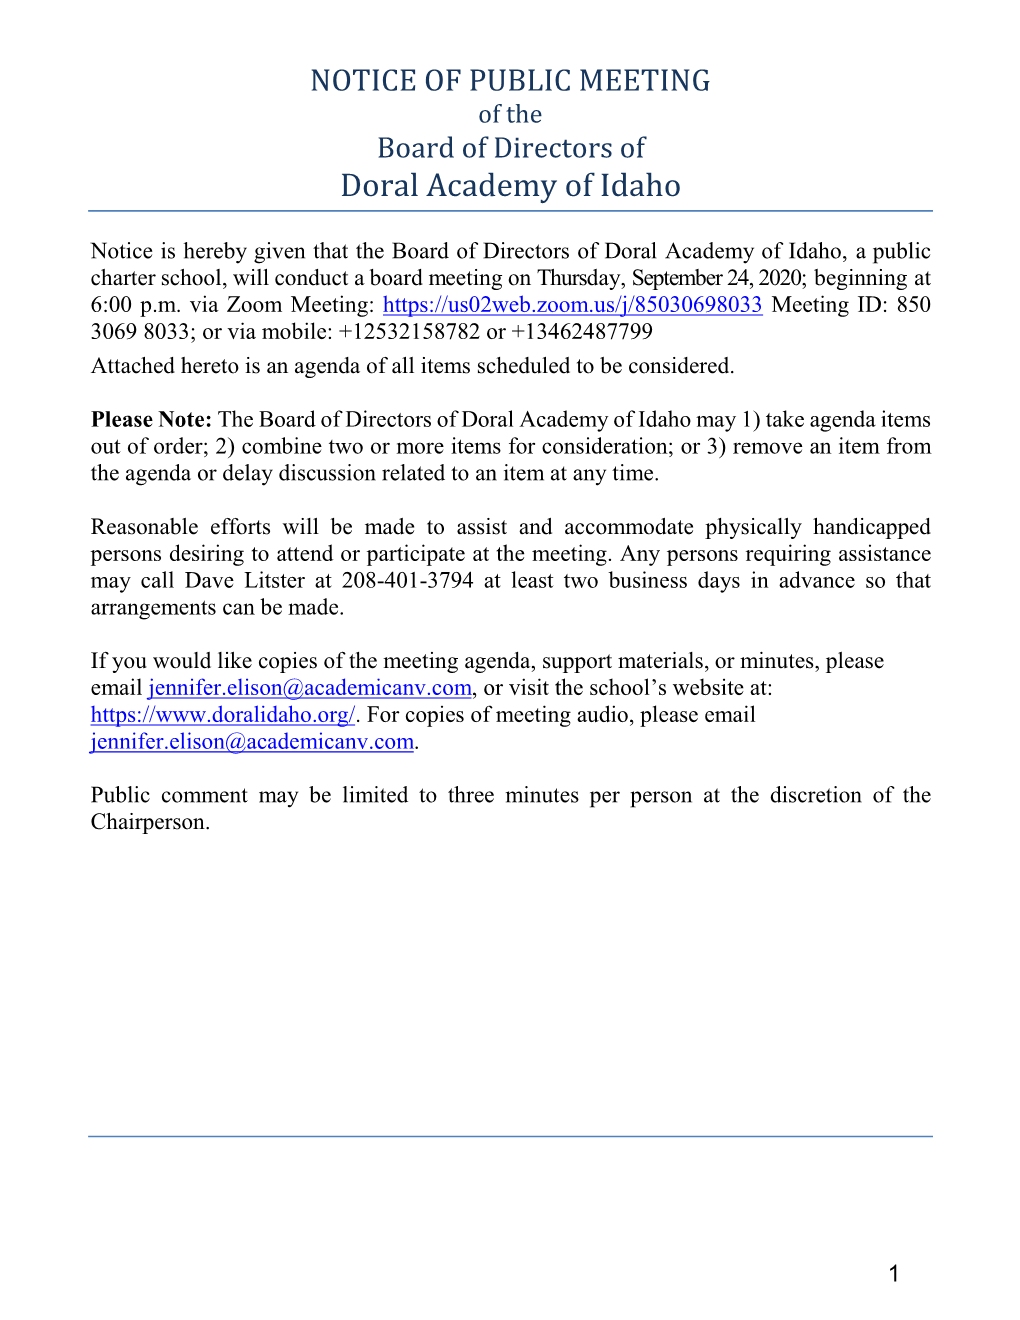 Board of Directors of Doral Academy of Idaho